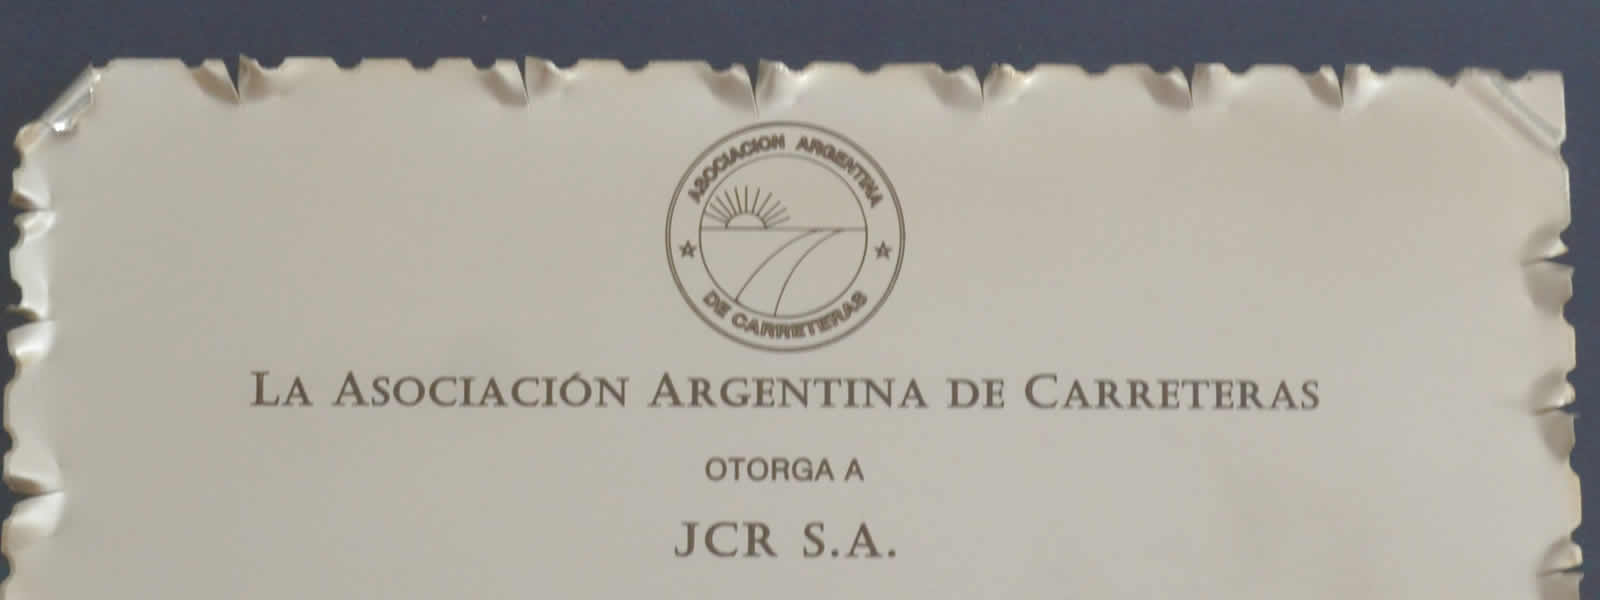 Premios y Reconocimientos a JCR S.A.